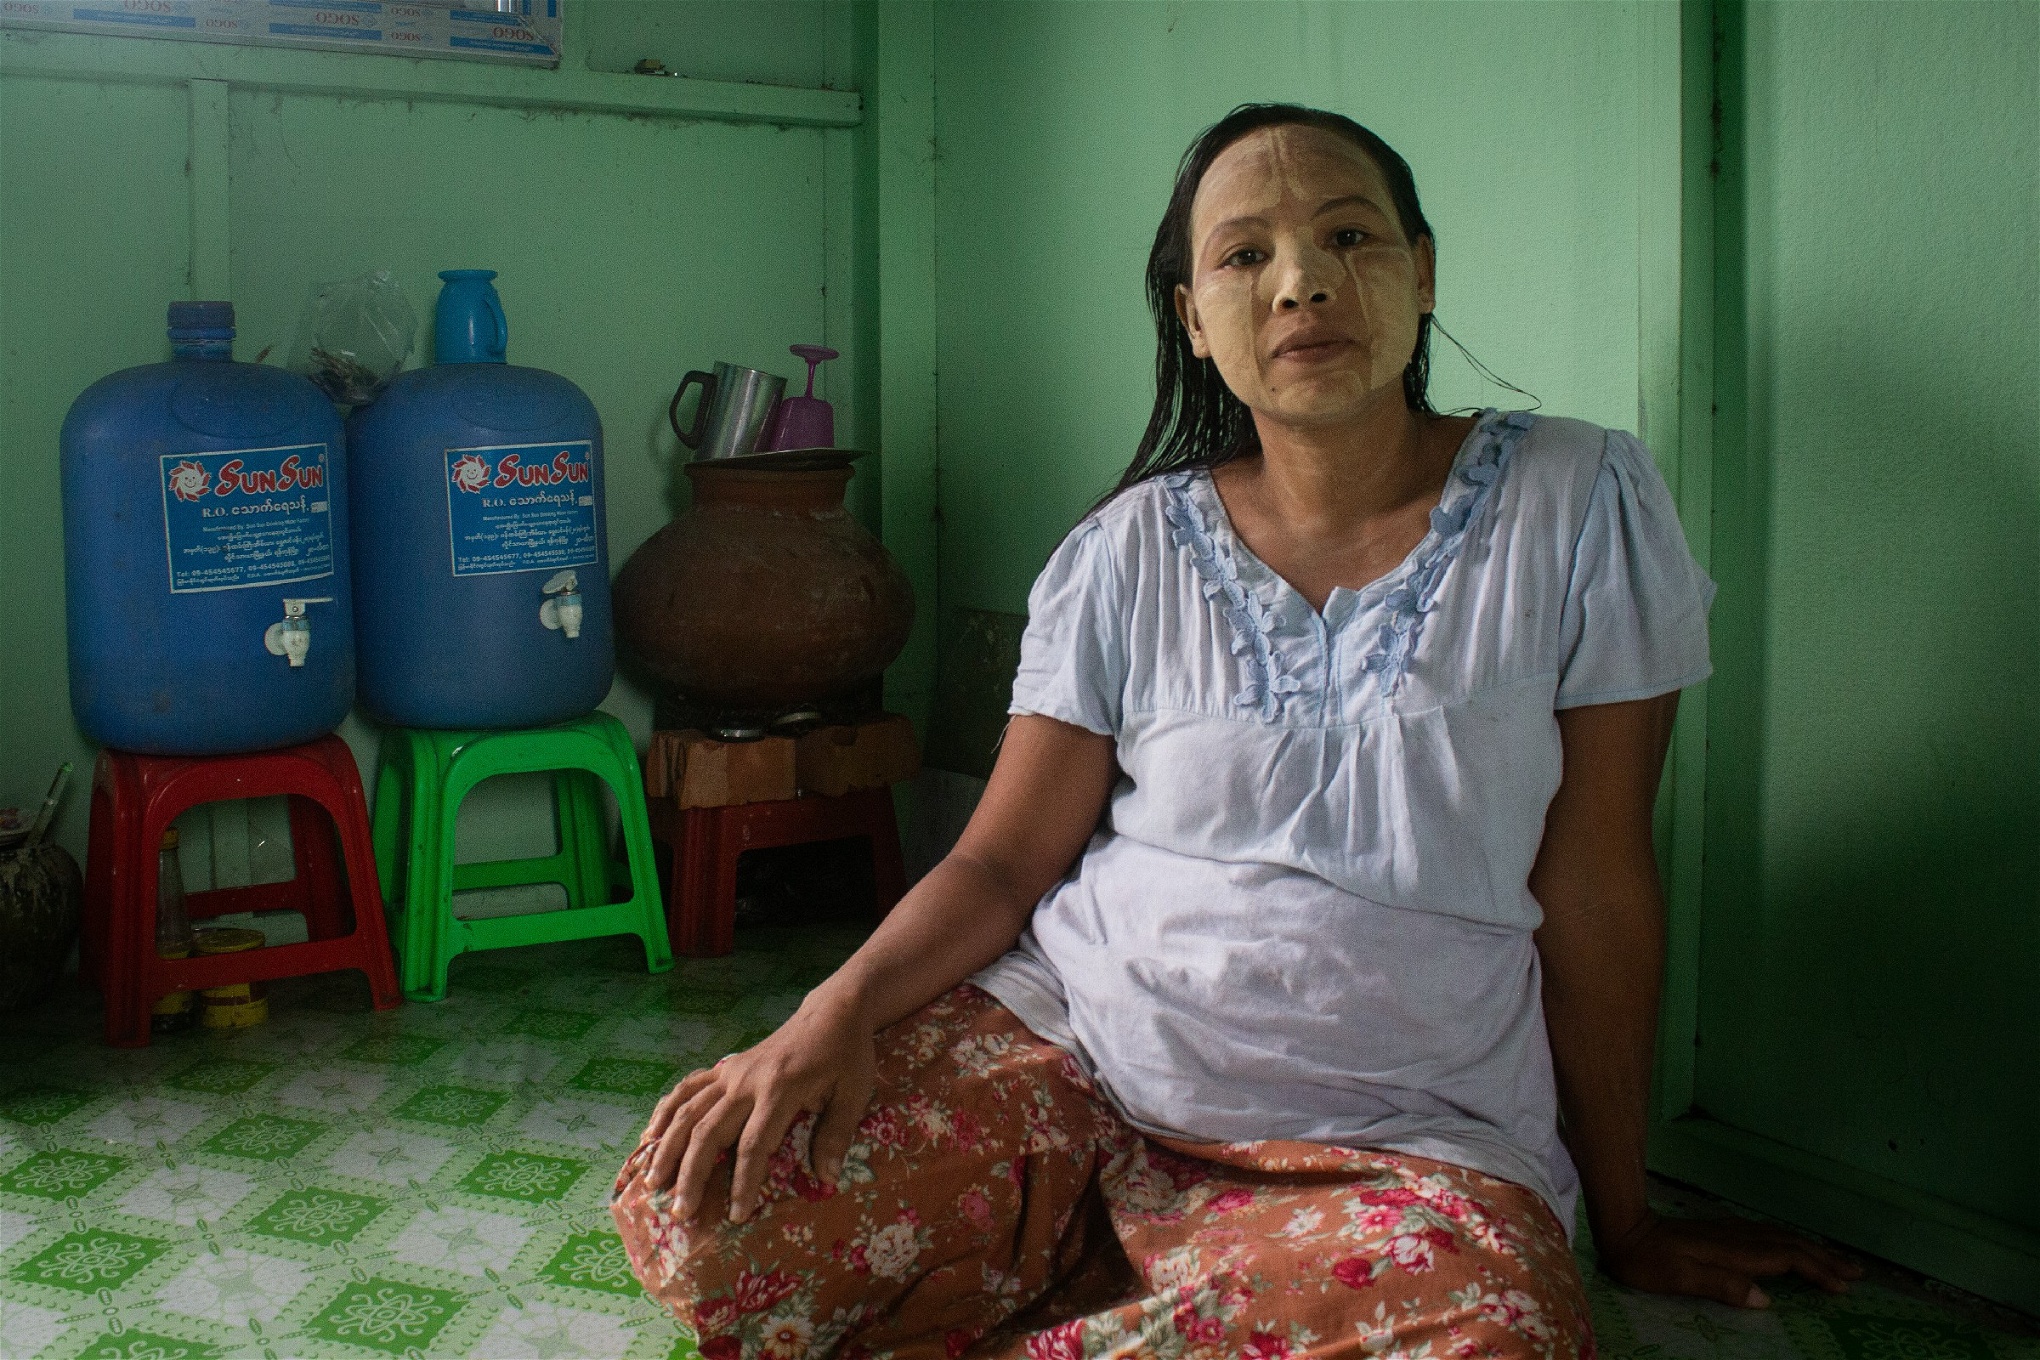 Aye Mi Sans familj hyr ett rum för [275 kronor] i månaden. Just nu lever de på hennes mans inkomst. Han tjänar mellan [20-45 kronor] om dagen, men har bara jobb tre till fyra dagar i veckan. För att ha råd med mat och hyra har familjen tvingats ta dyra lån till 20 procents ränta.  Foto: Kyaw Lin Htoon